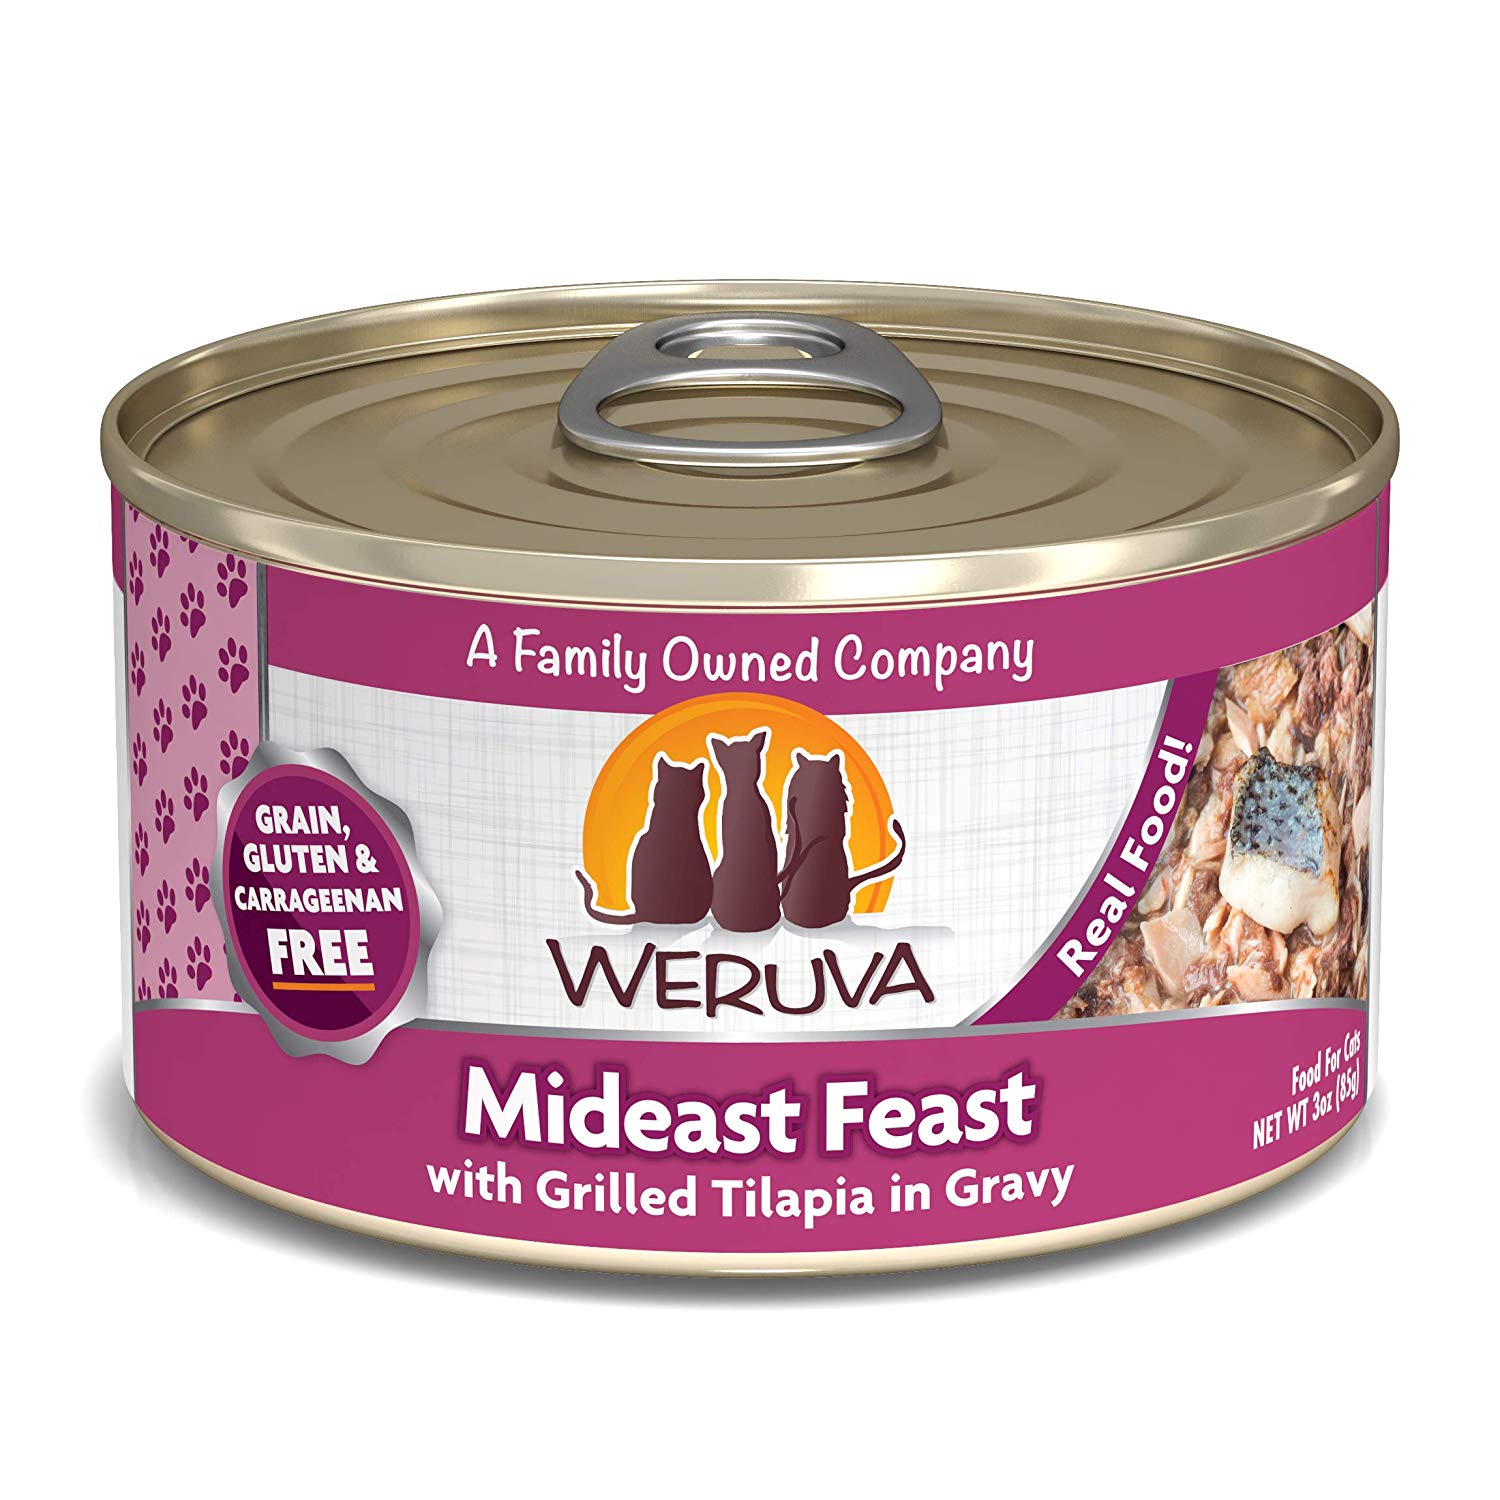 唯美味主食貓罐-異國海鮮
WERUVA-Mideast Feast With Grilled Tilapia in Gravy